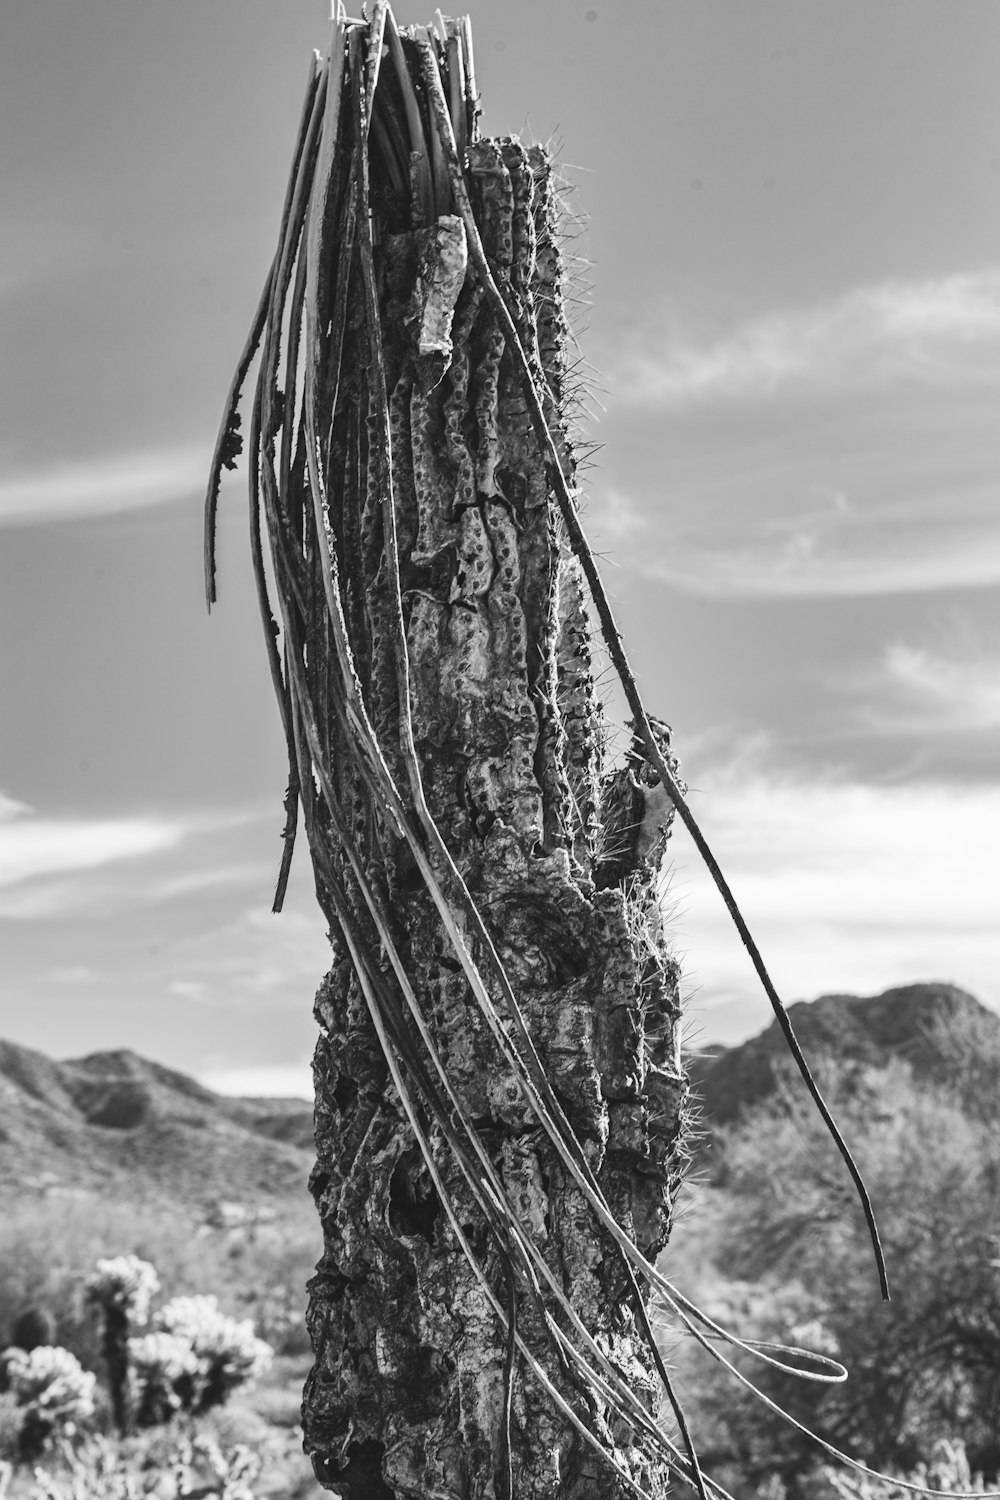 Un cactus alto con muchas enredaderas creciendo en él